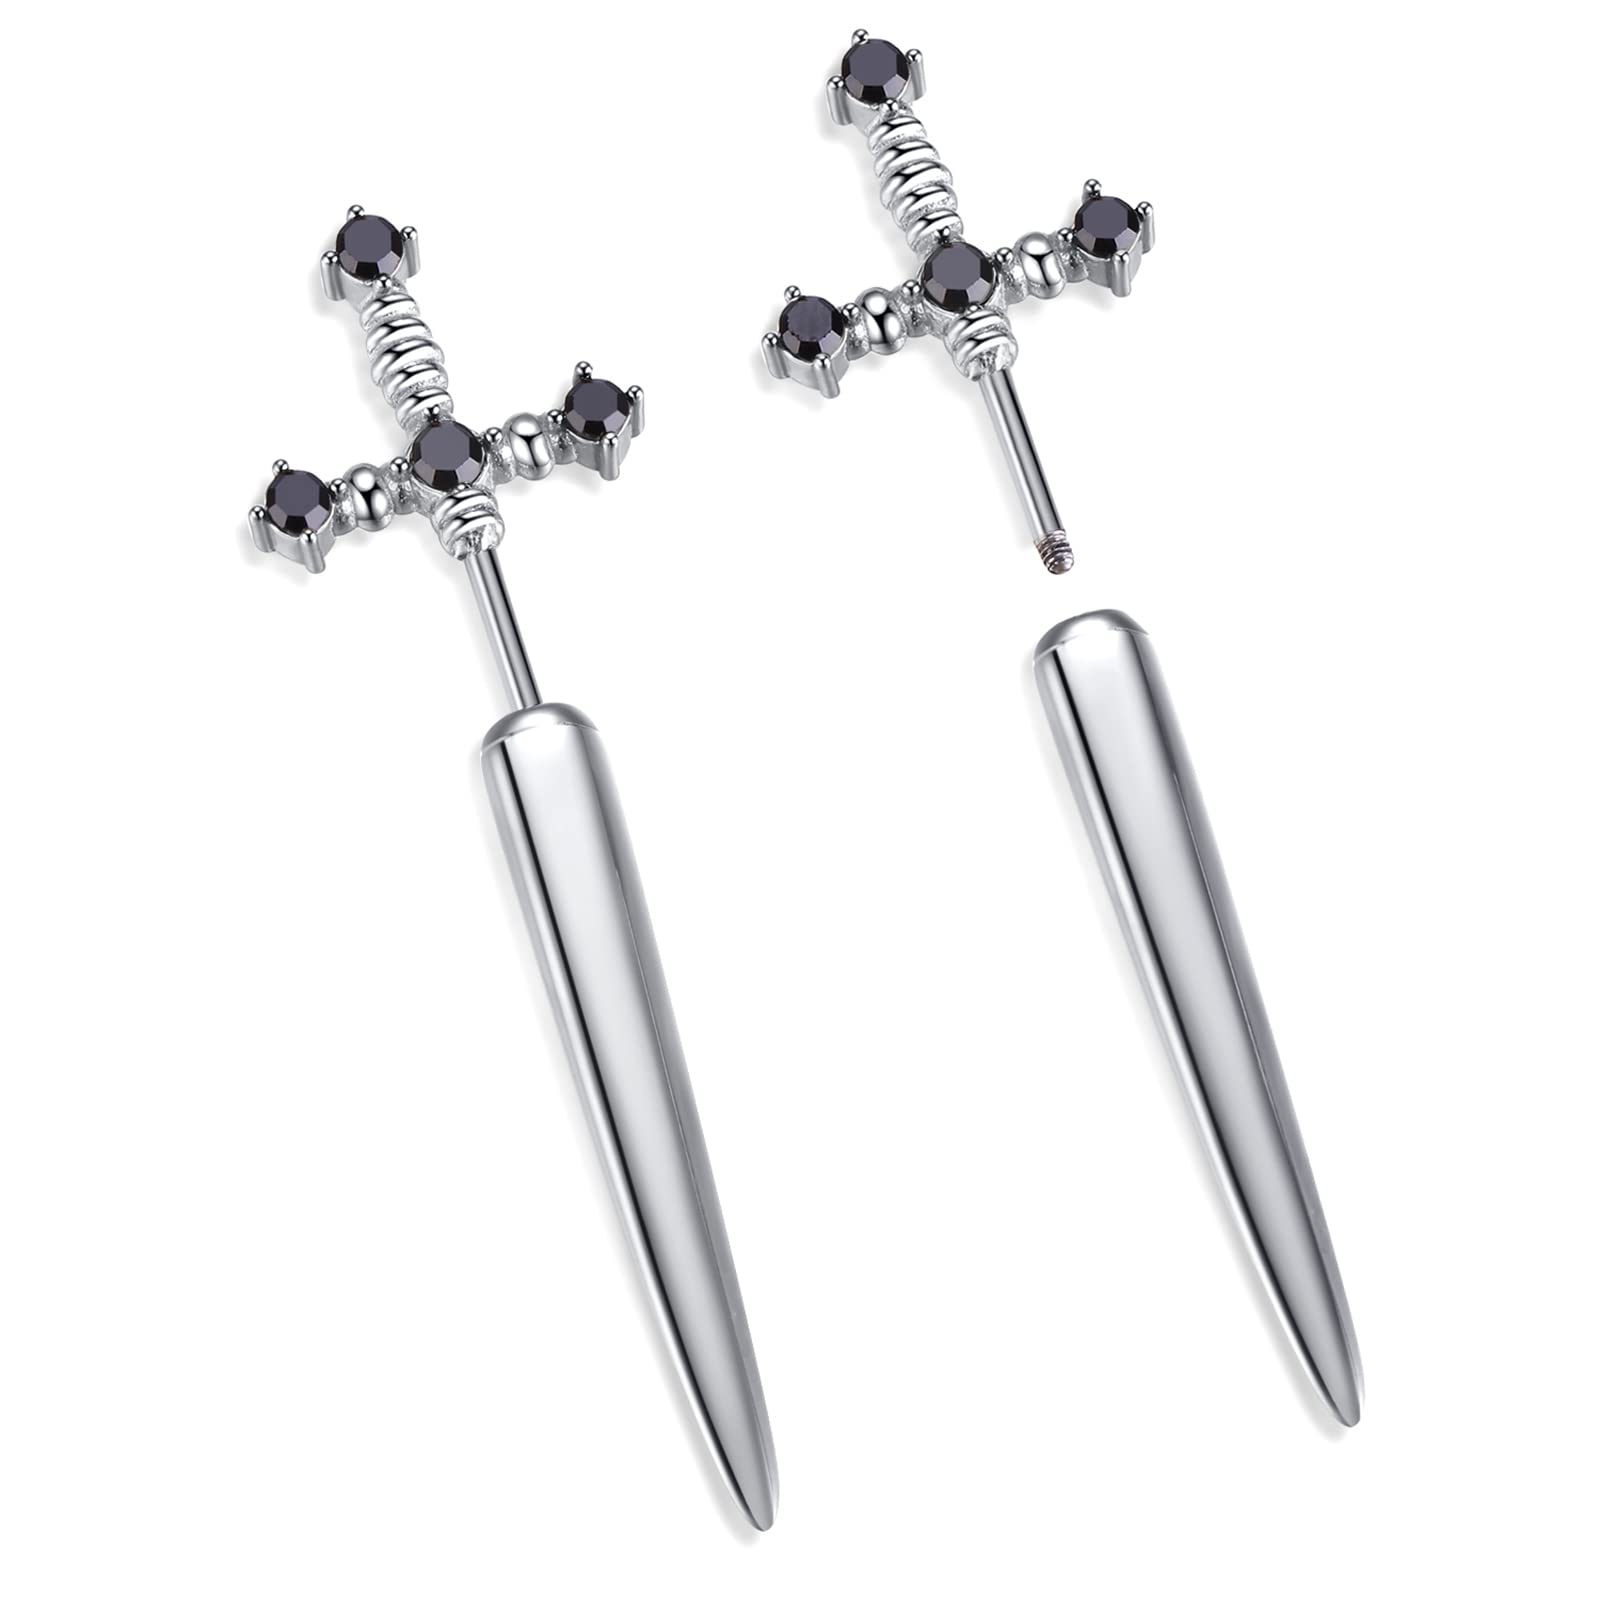 Goth Sword Earring in Silver